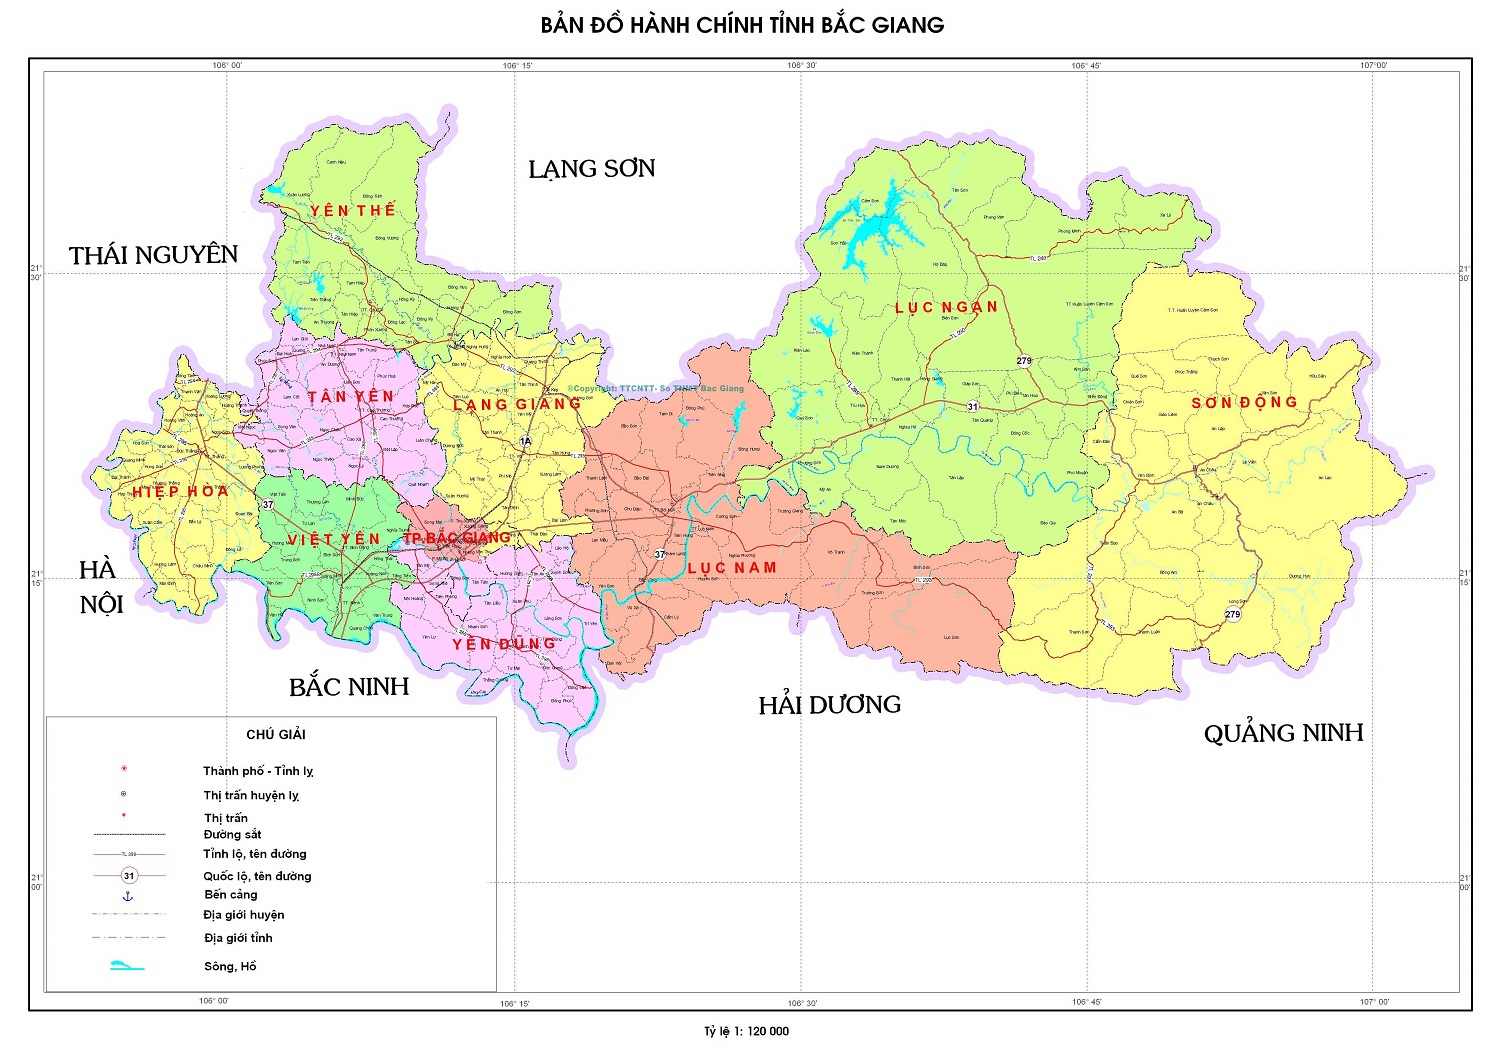 Bảng giá nhà đất Bắc Giang từ năm 2015 đến 2020